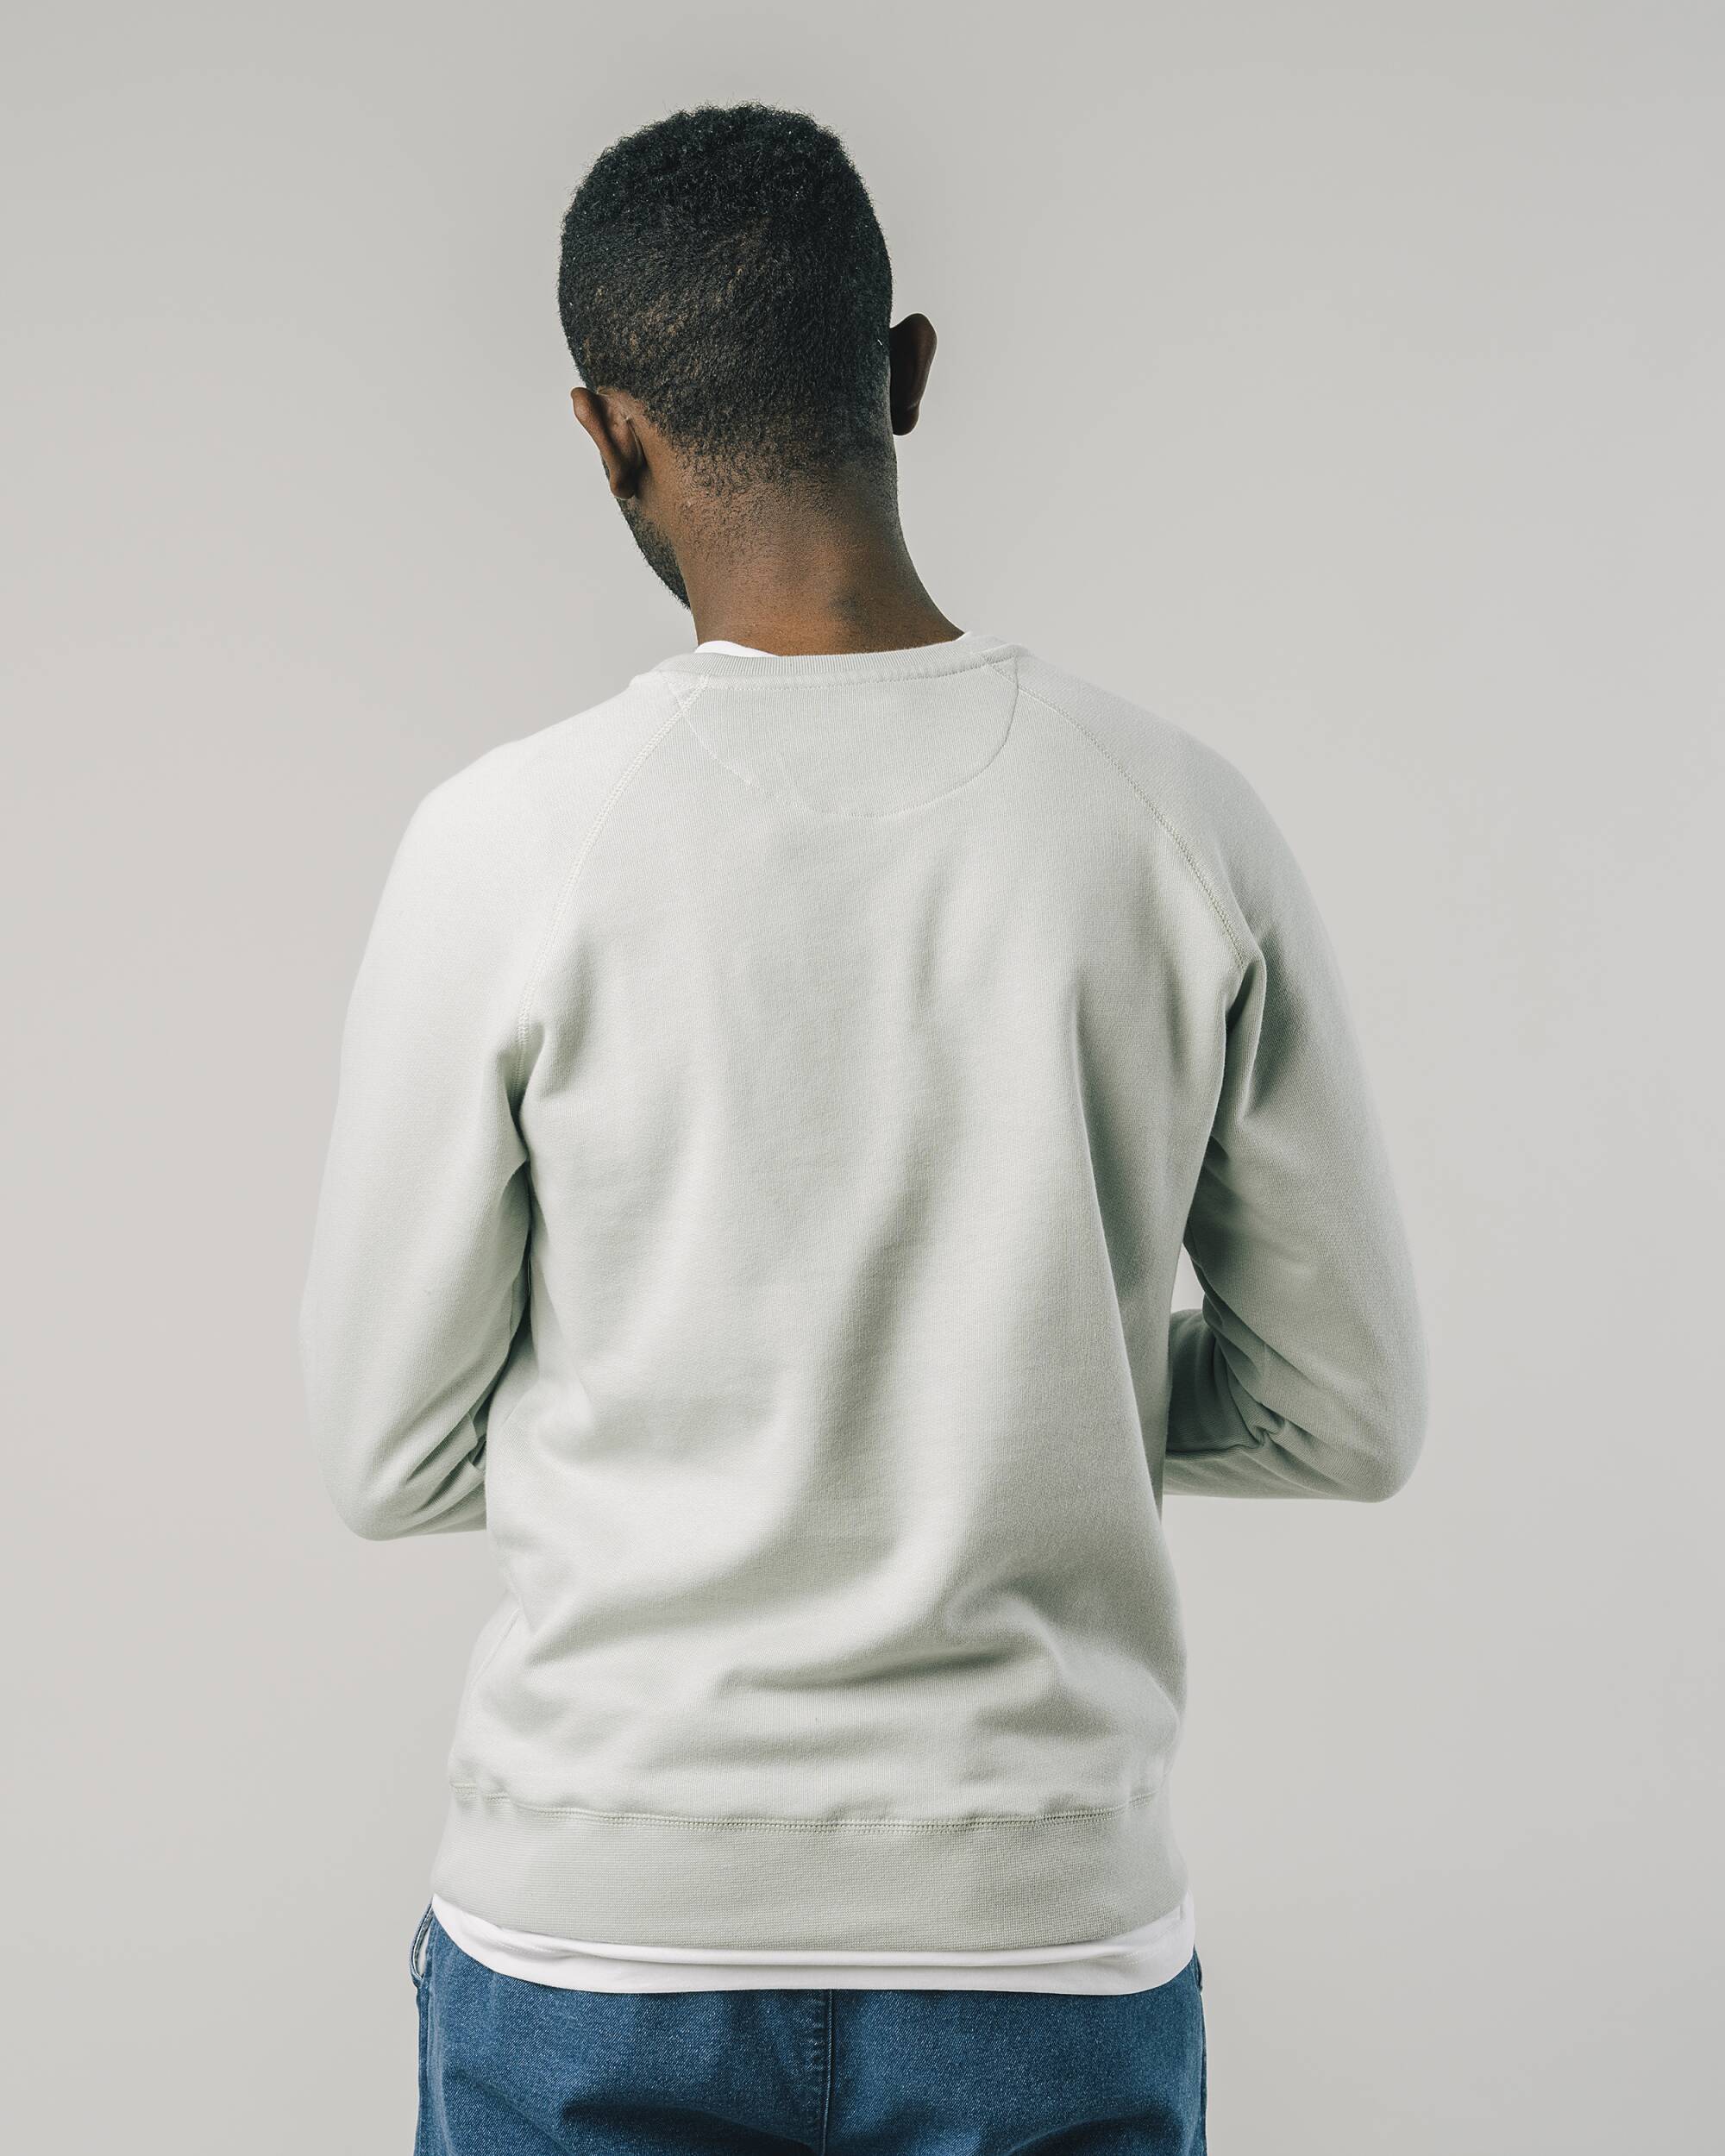 Sweat-shirt "Wagon" gris en coton 100% biologique de Brava Fabrics